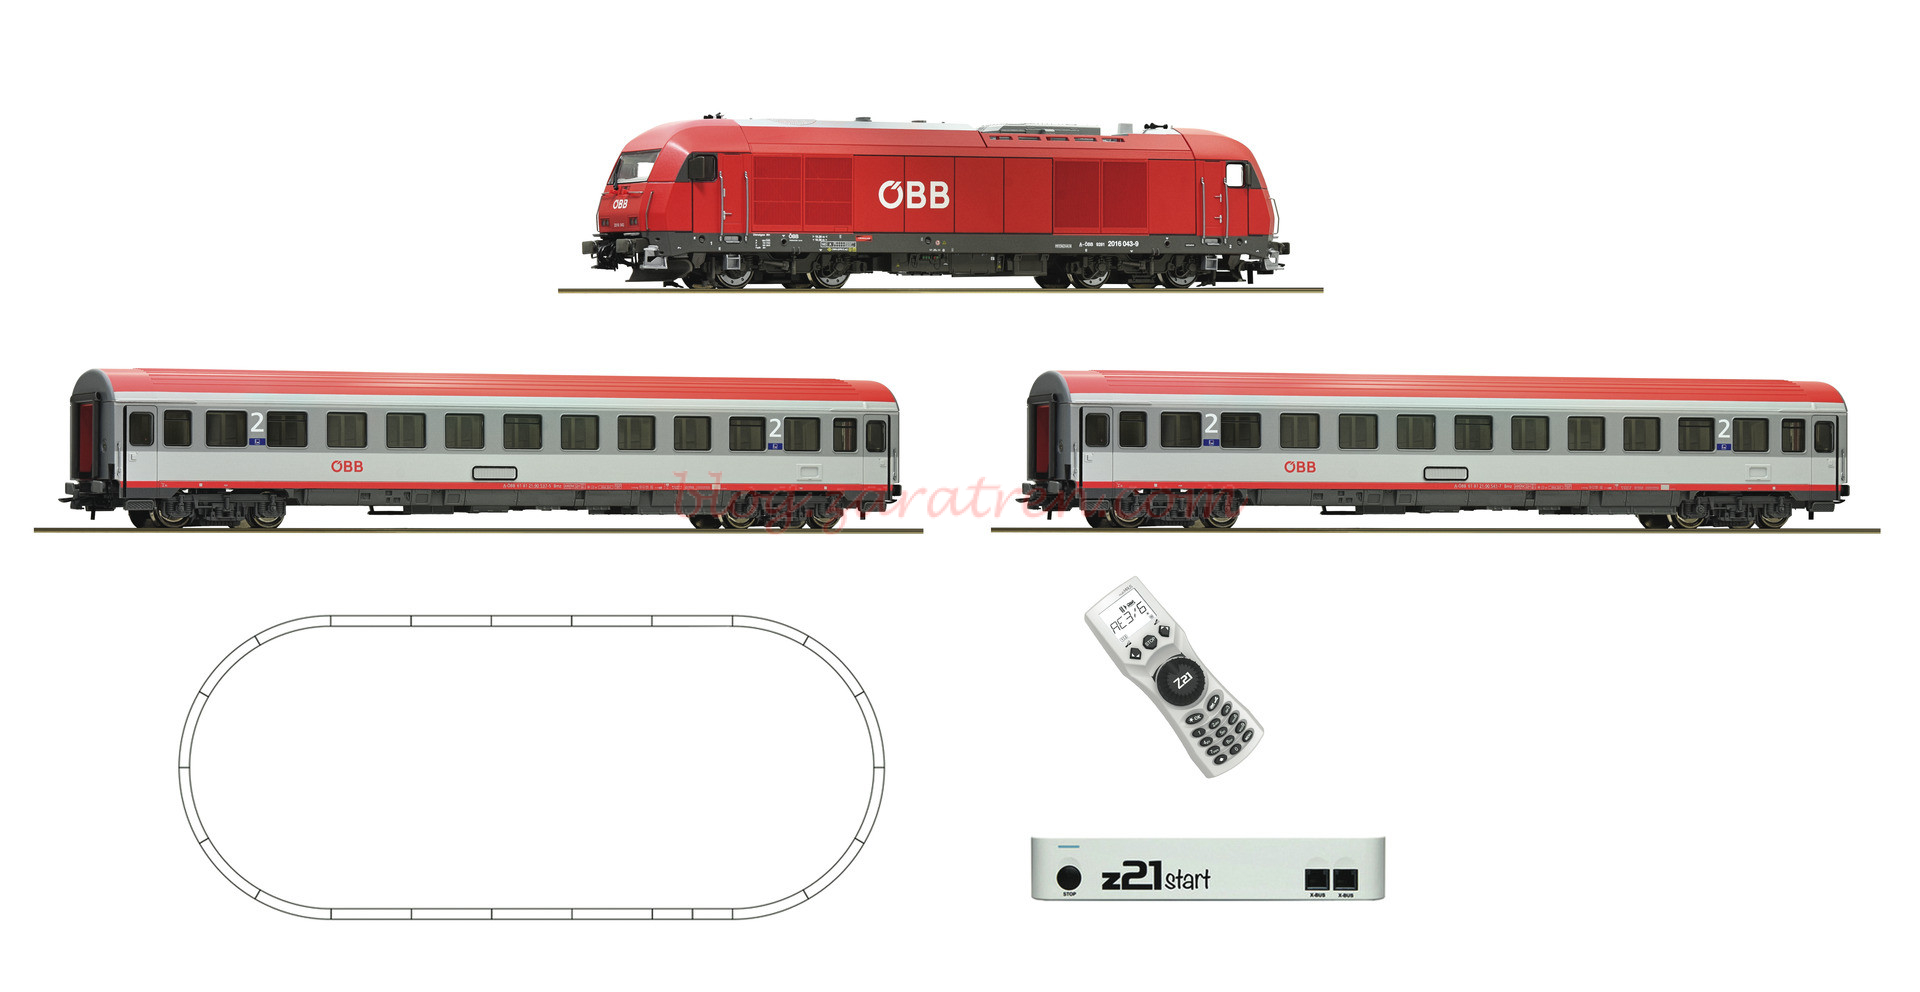 Roco – Set de iniciación Loc. Diesel clase 2016 Express Train, OBB, Dos coches, Digital, Z21, mando, Ref: 51341.